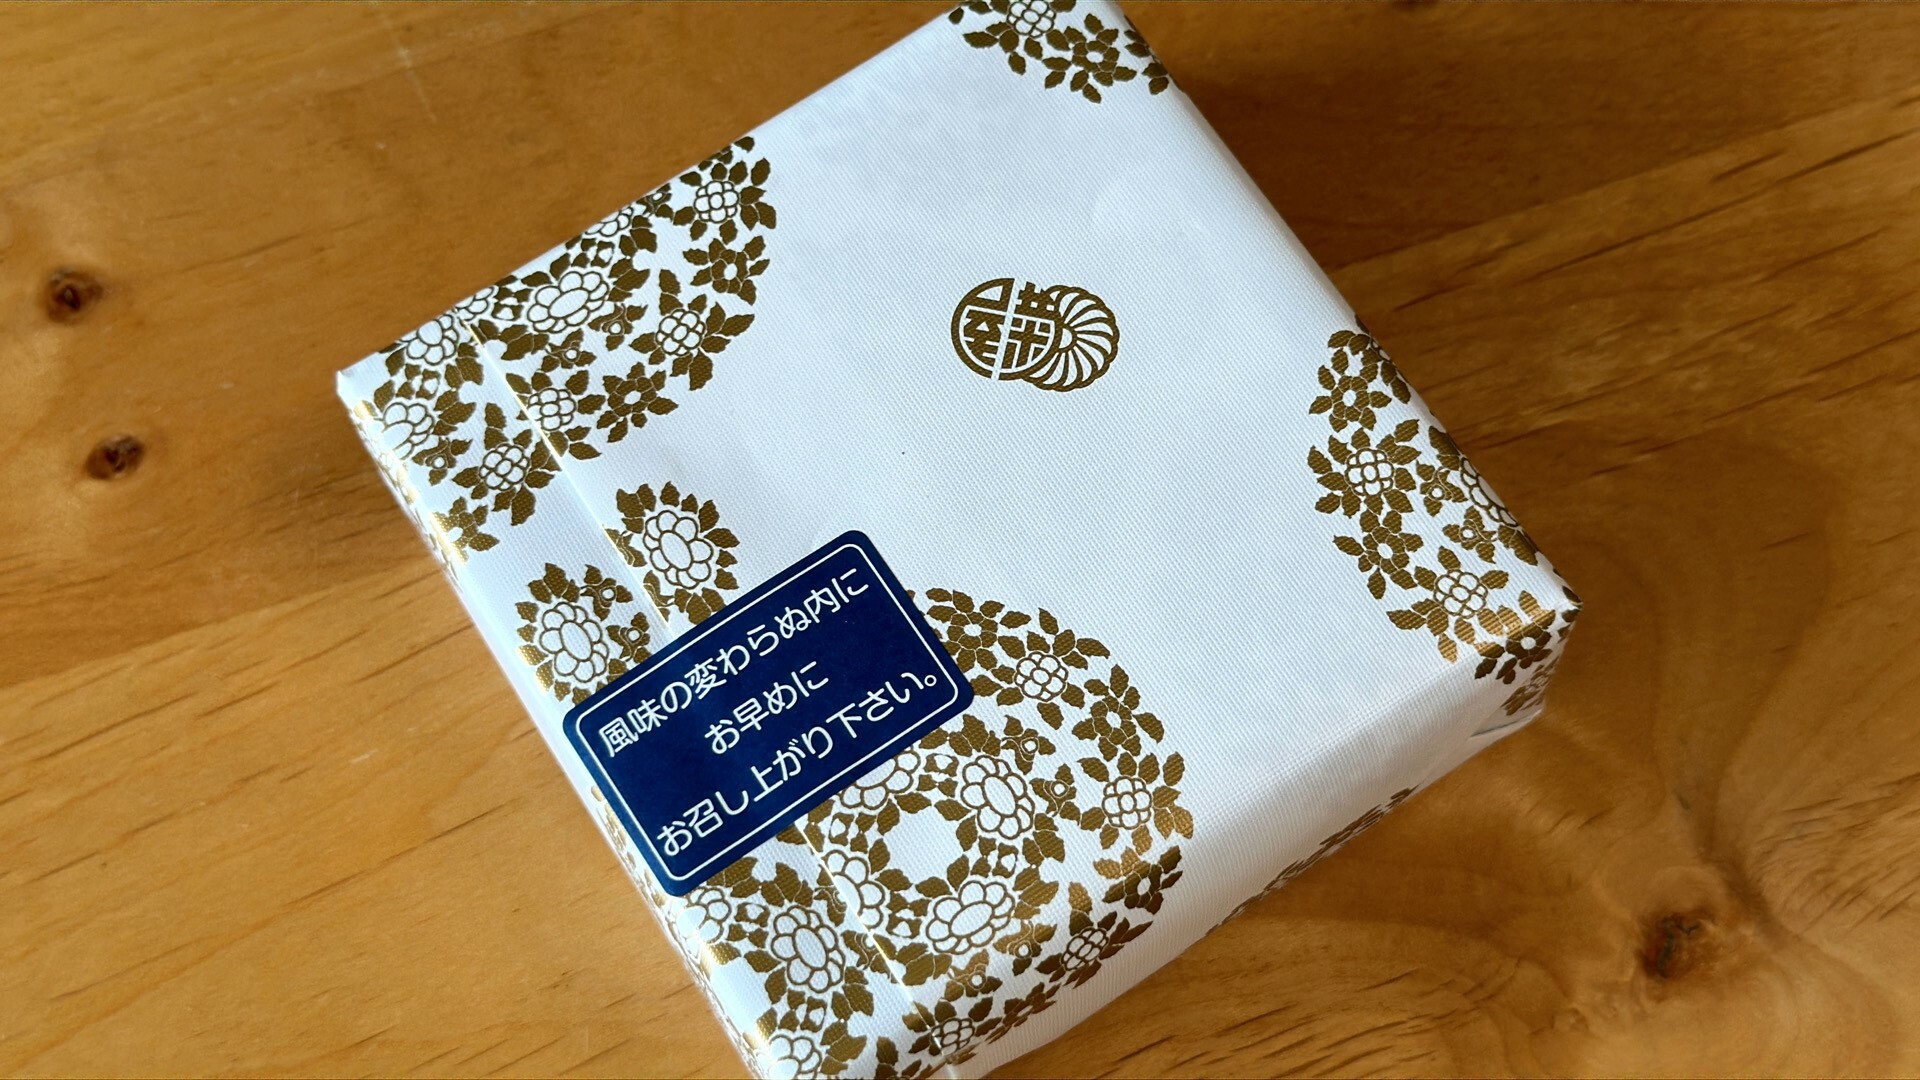 菊花が描かれた質の良い包装紙に包まれた菊の宿